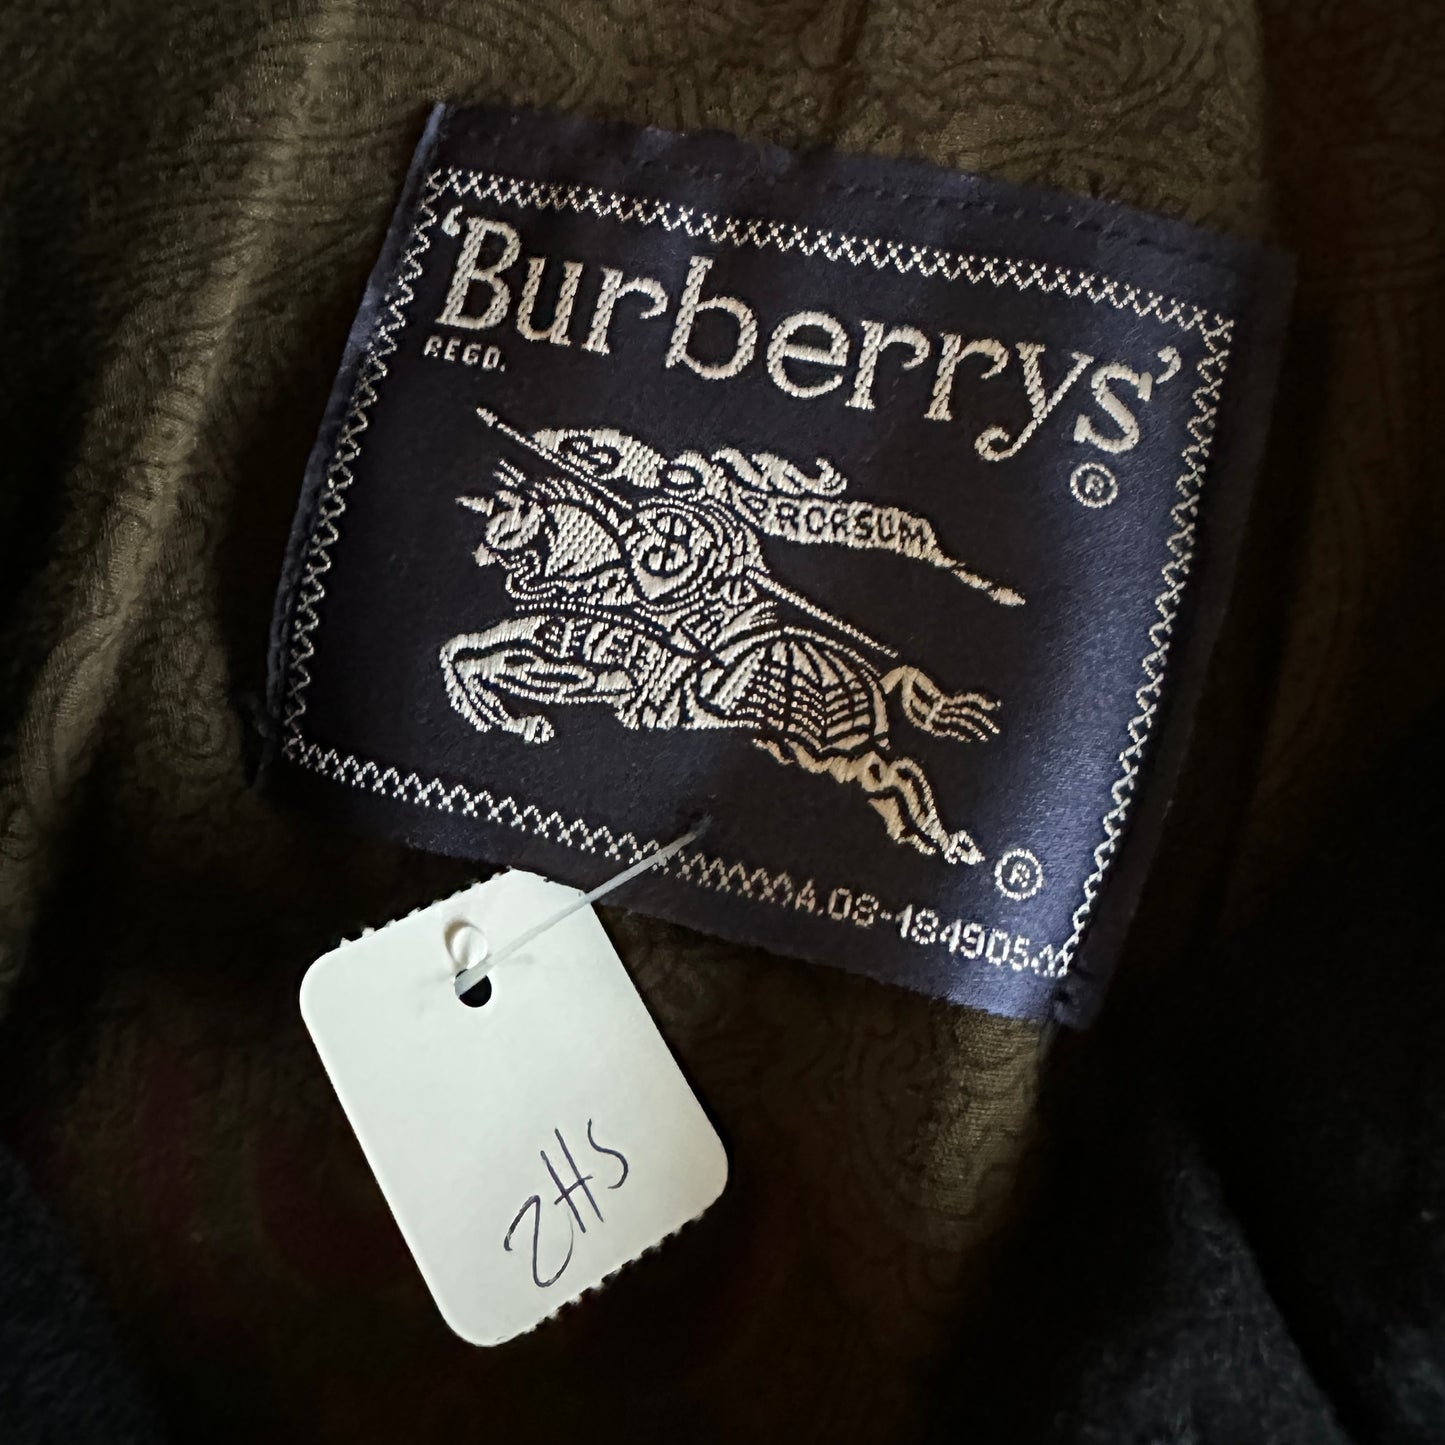 Burberrys Cashmere Wool Coat - Deadstock - 56 / XL